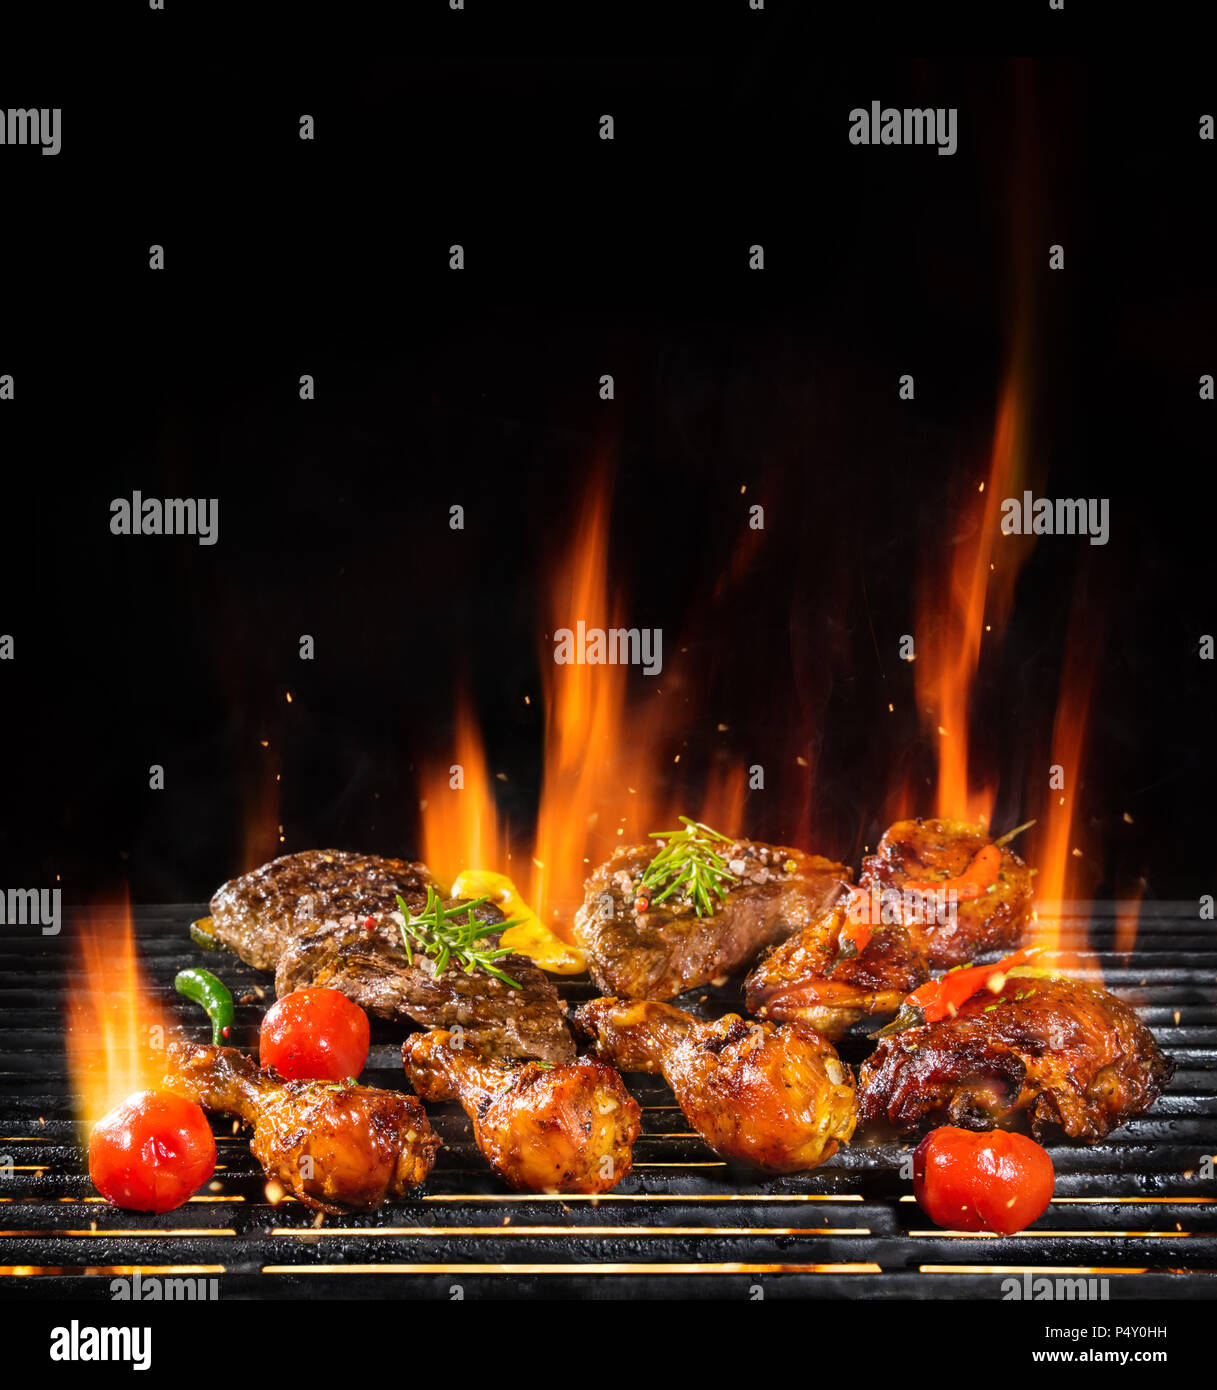 Leckere Stücke Fleisch vom Grill mit Feuer flammen. Auf schwarzem  Hintergrund isoliert. Barbecue und Grillen. Sehr hohe Auflösung  Stockfotografie - Alamy